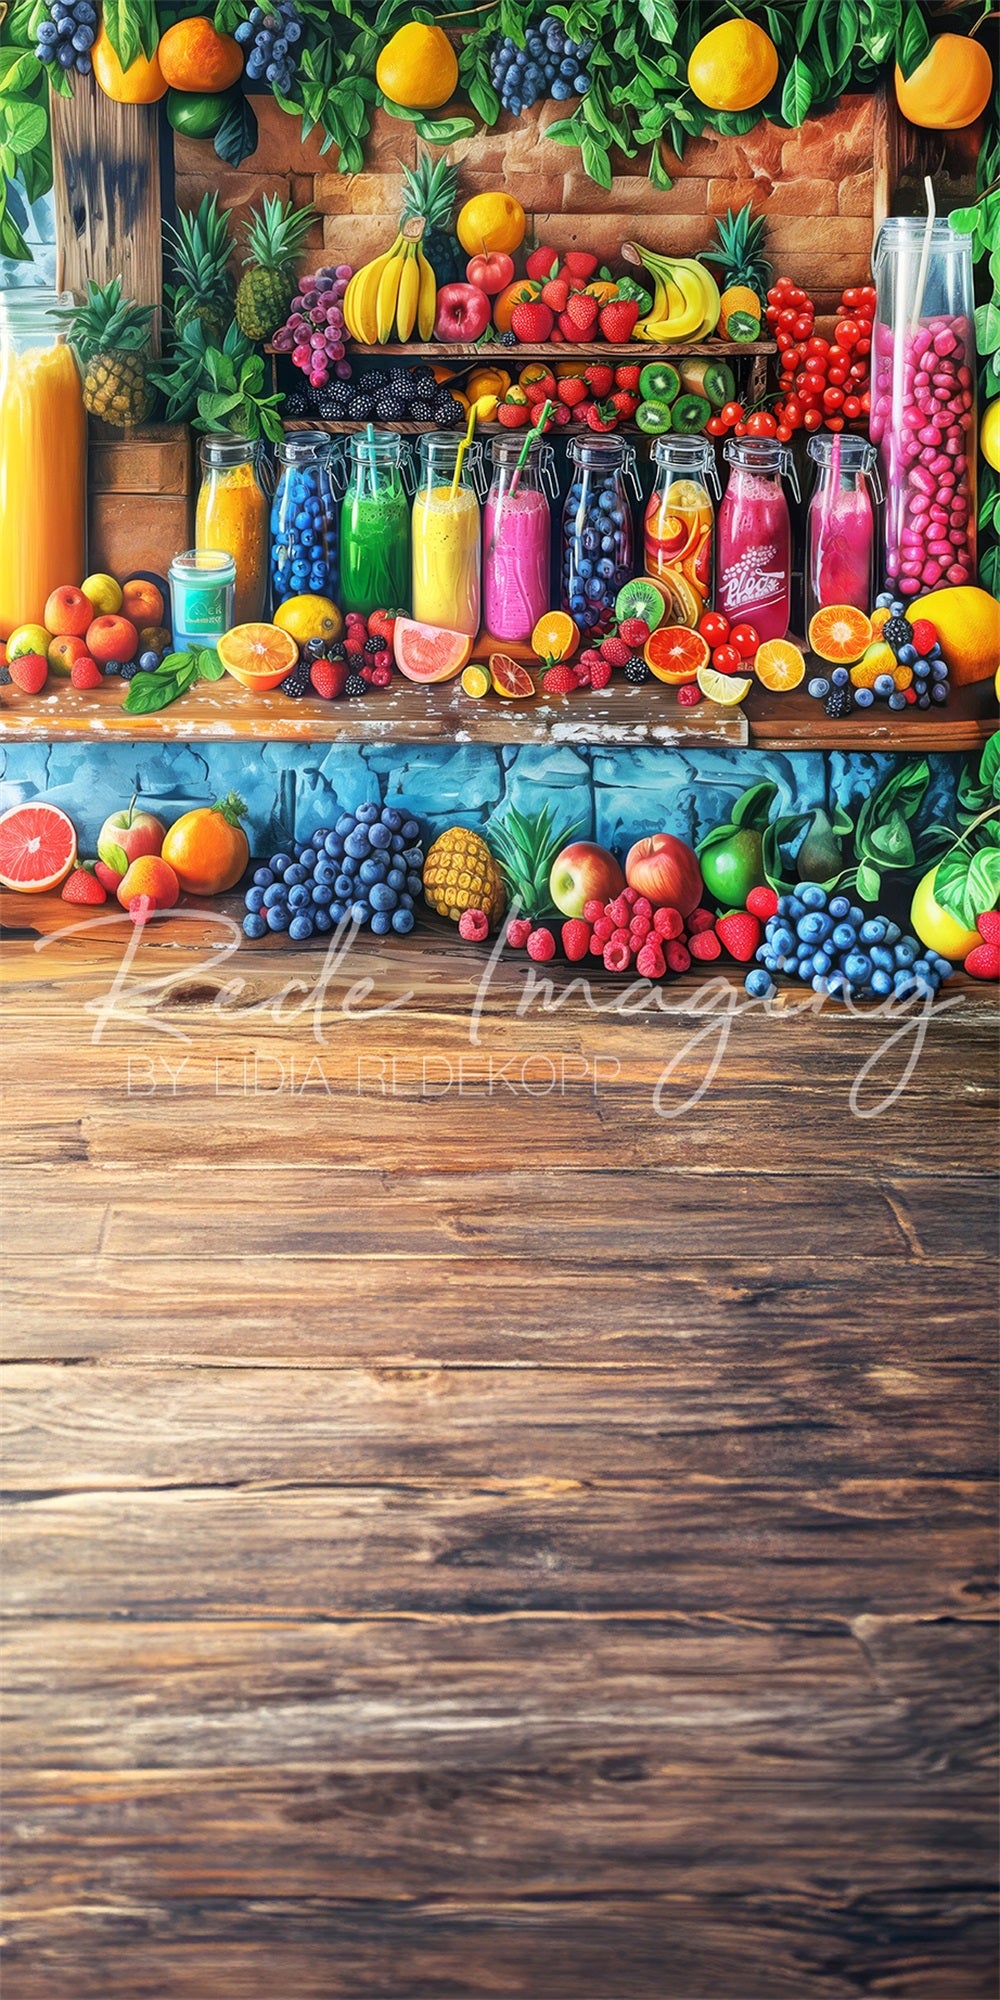 Sfondo del negozio di frutta colorato Sweep Summer progettato da Lidia Redekopp